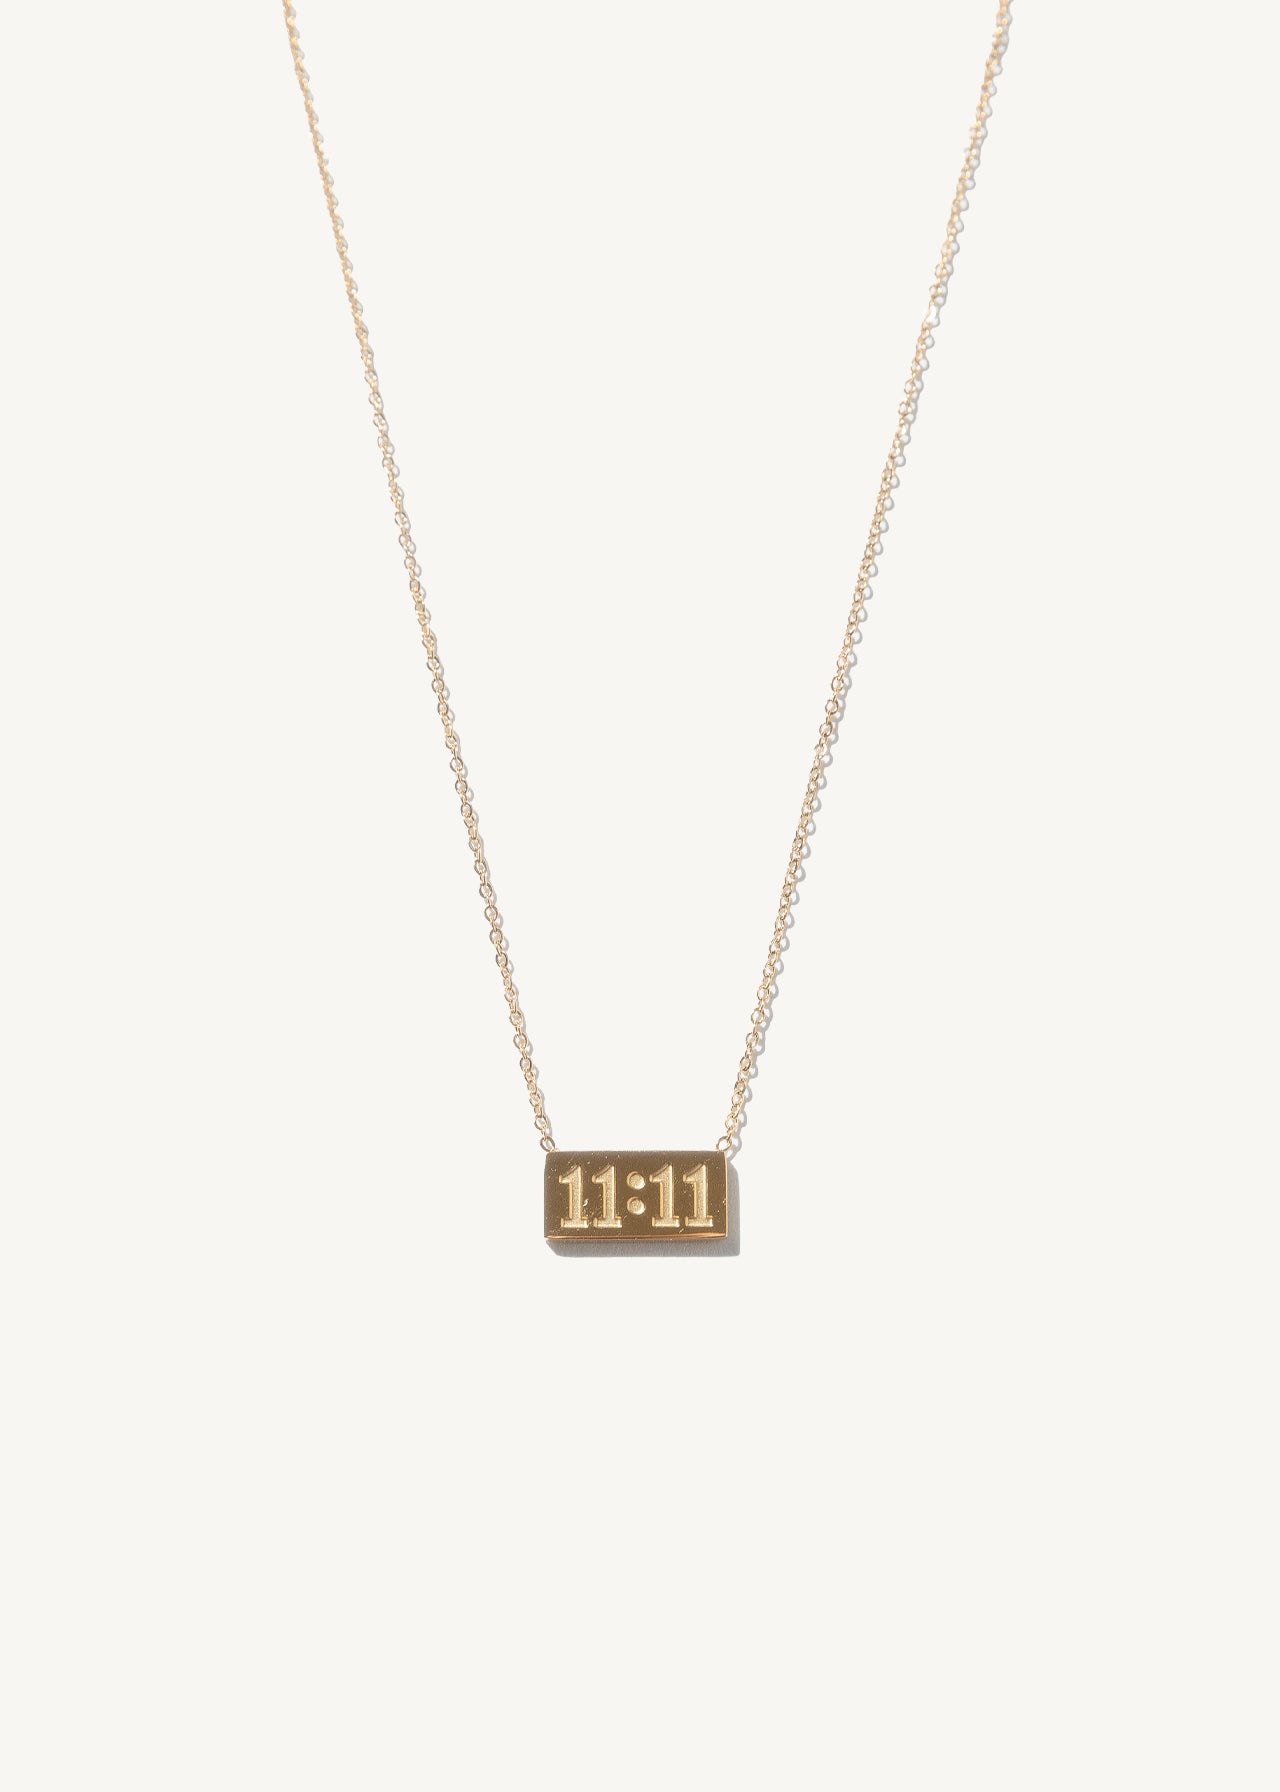 11:11 Necklace • best seller